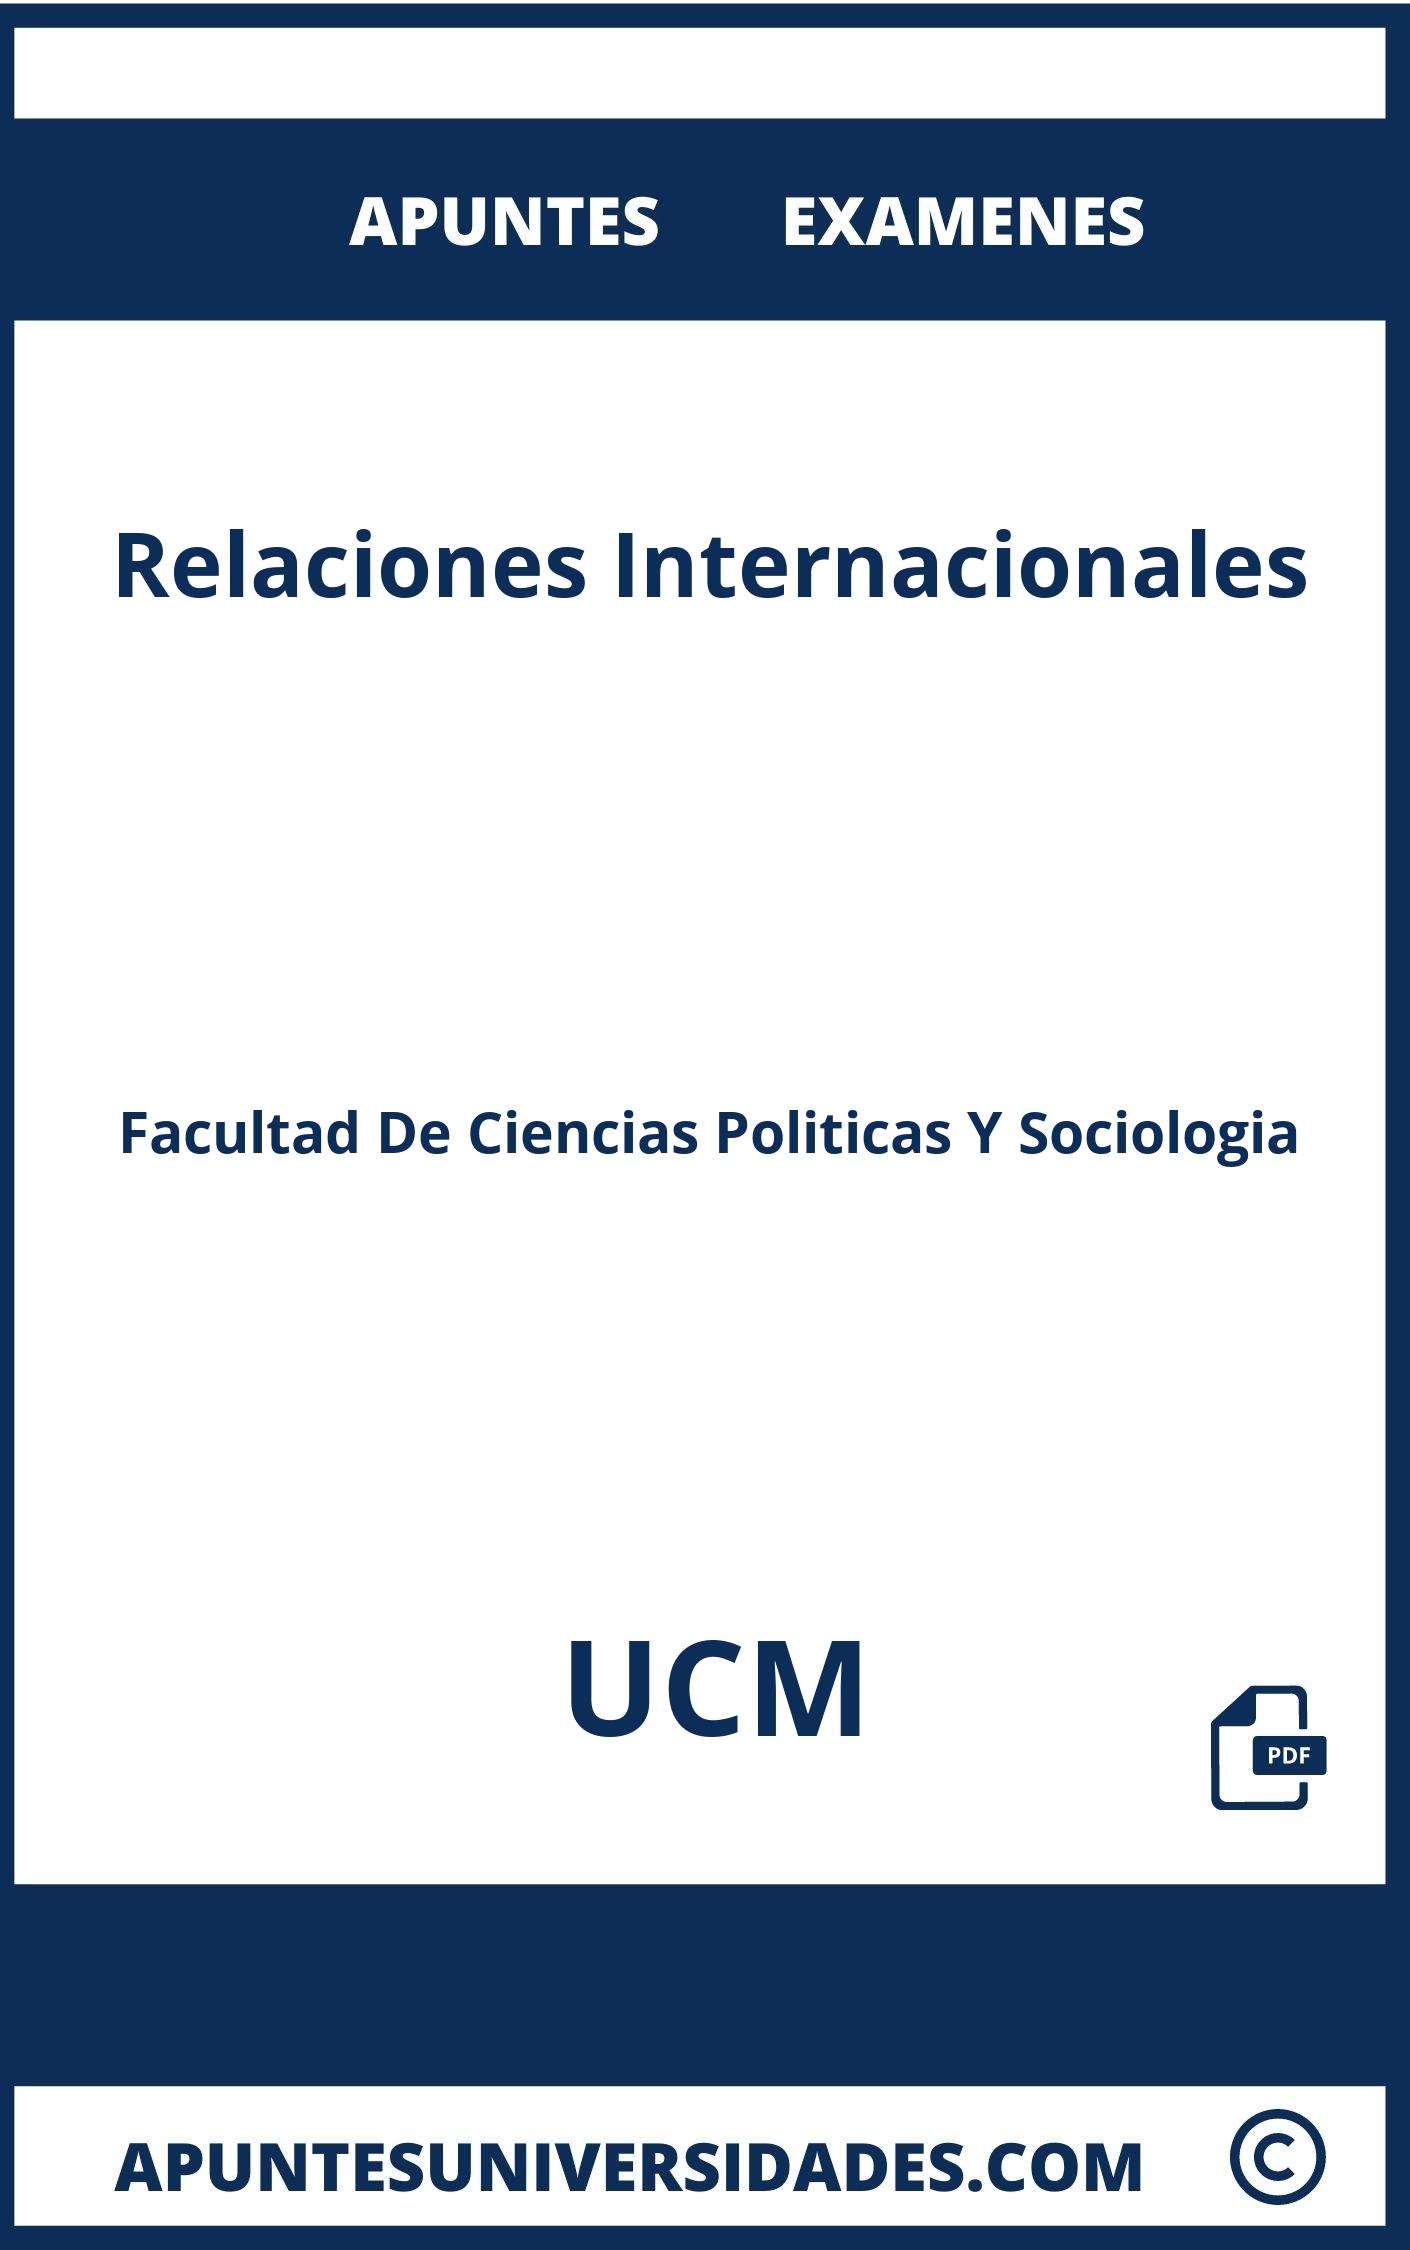 Examenes y Apuntes Relaciones Internacionales UCM